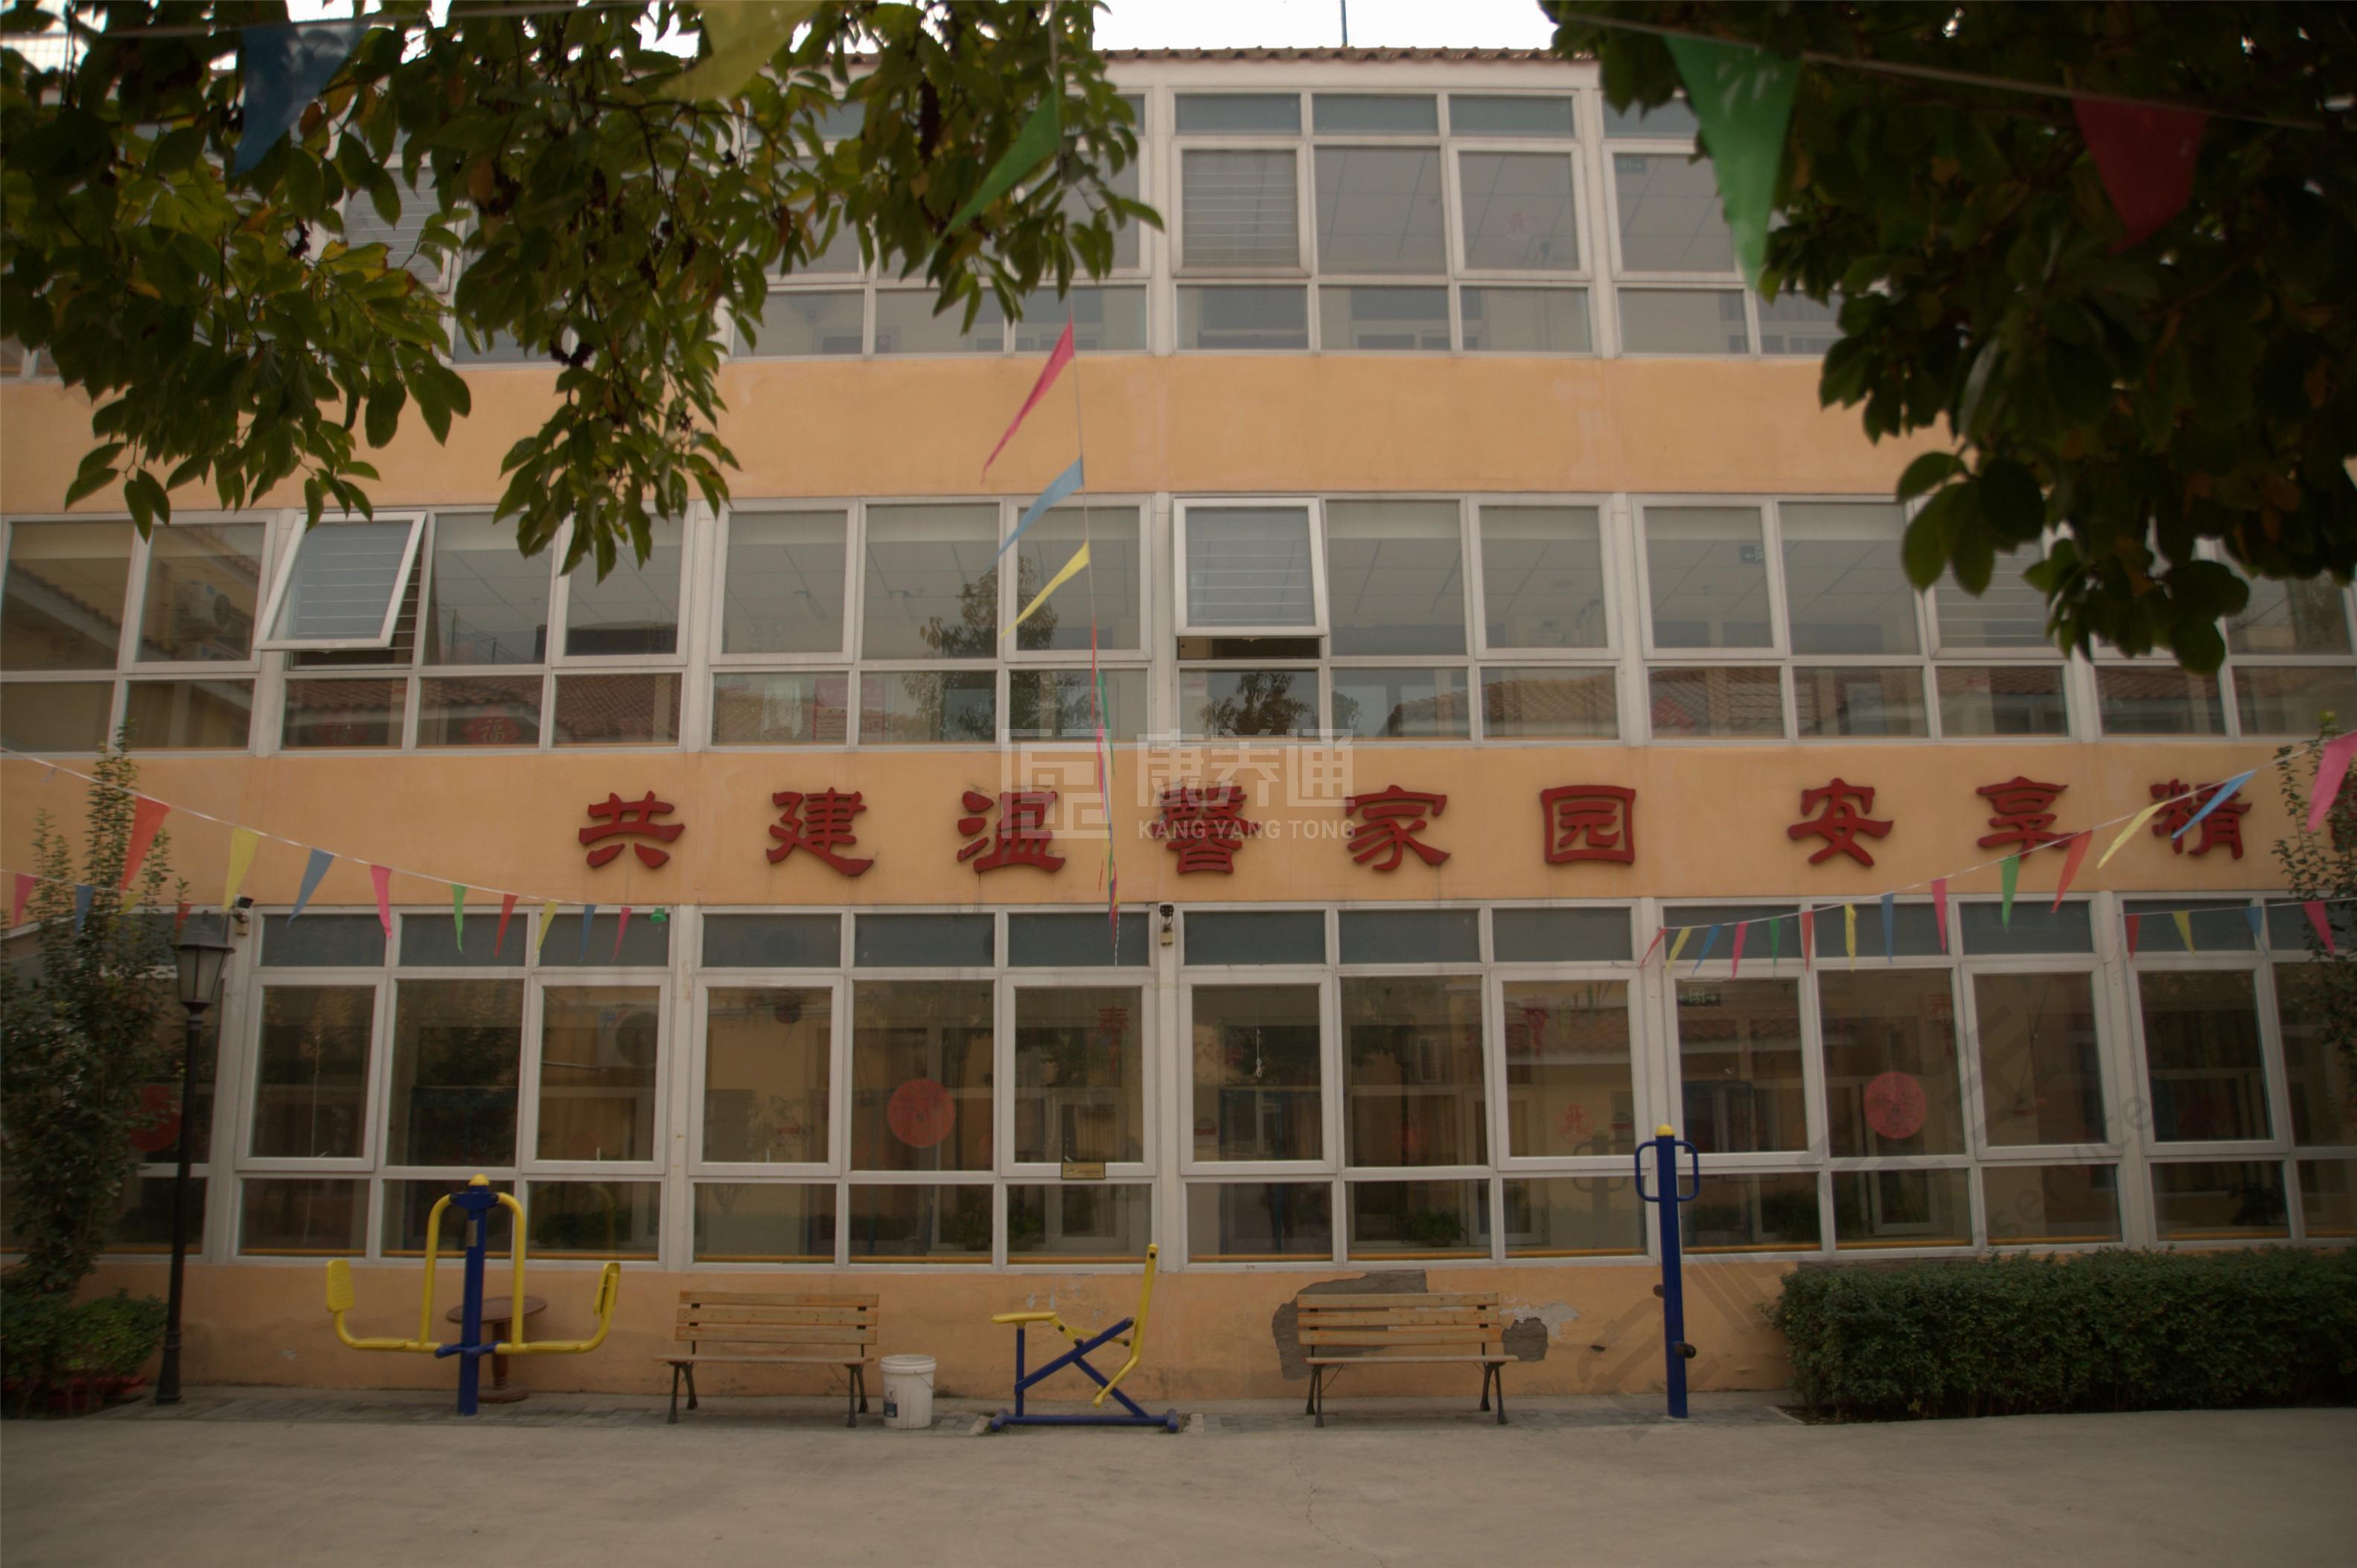 北京市朝阳区佰康老年公寓服务项目图4让长者主动而自立地生活